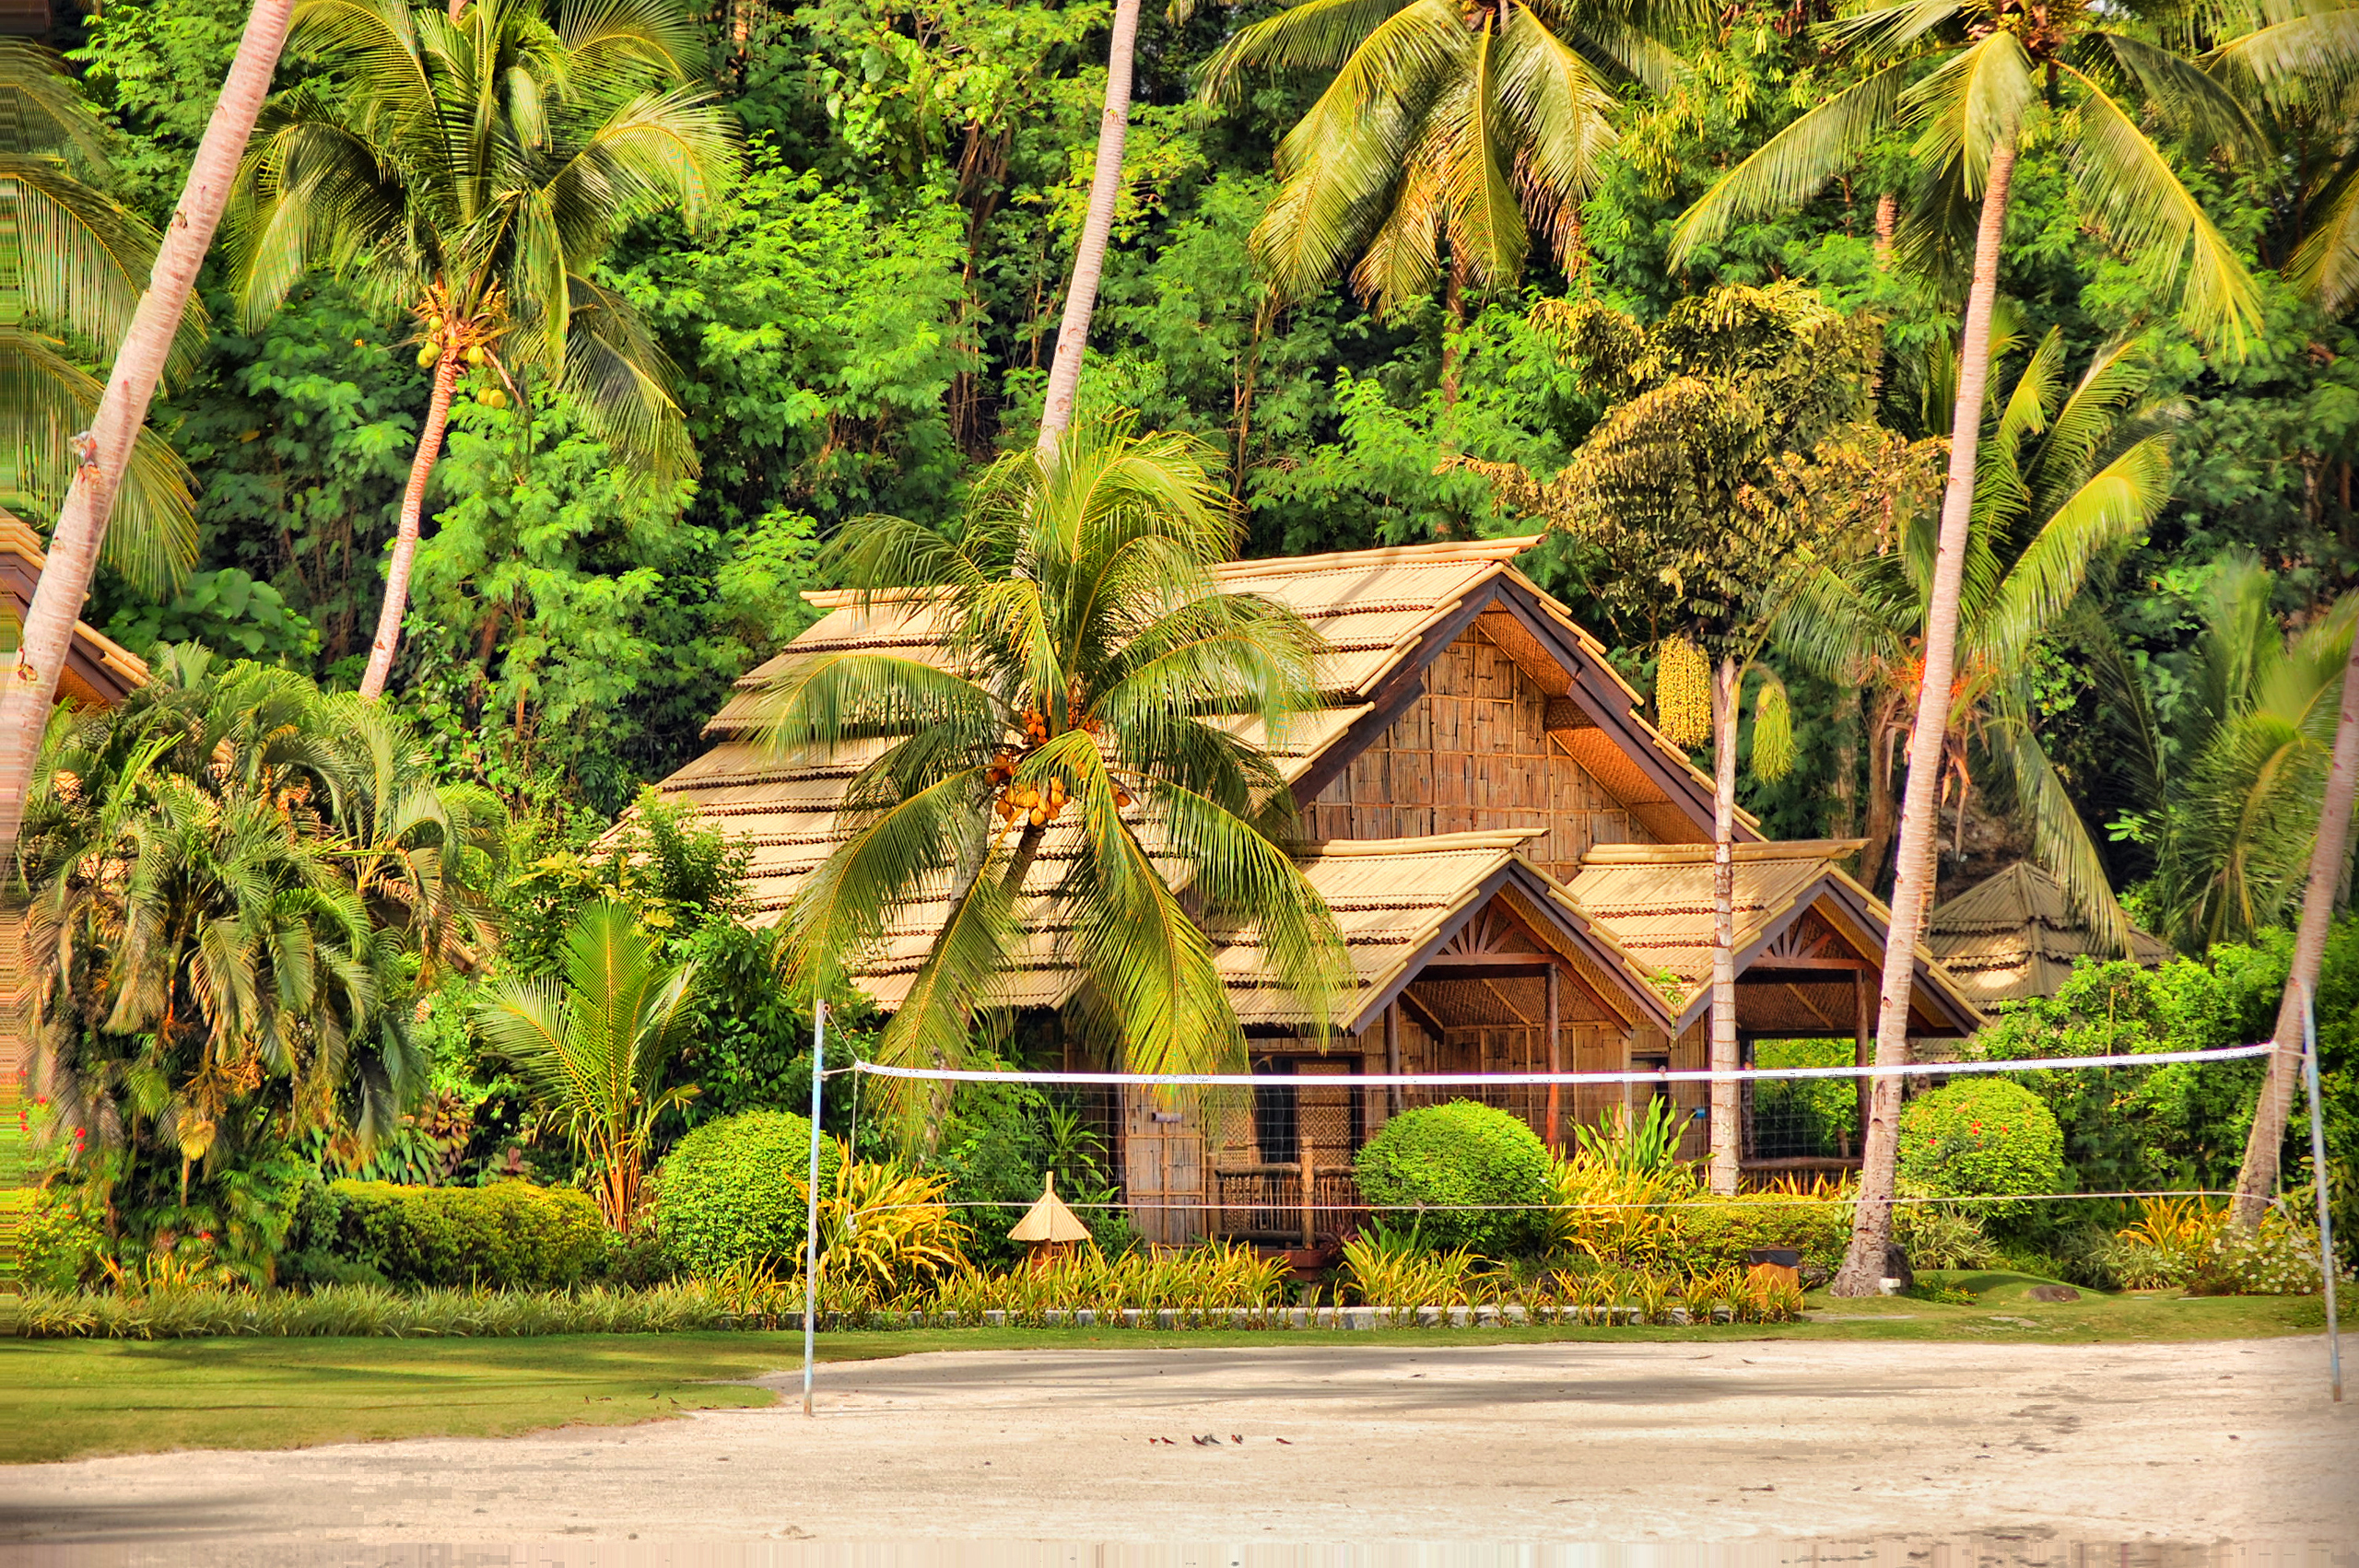 141965 descargar imagen bungalow, naturaleza, palms, isla, cabaña, choza, filipinas, samal: fondos de pantalla y protectores de pantalla gratis